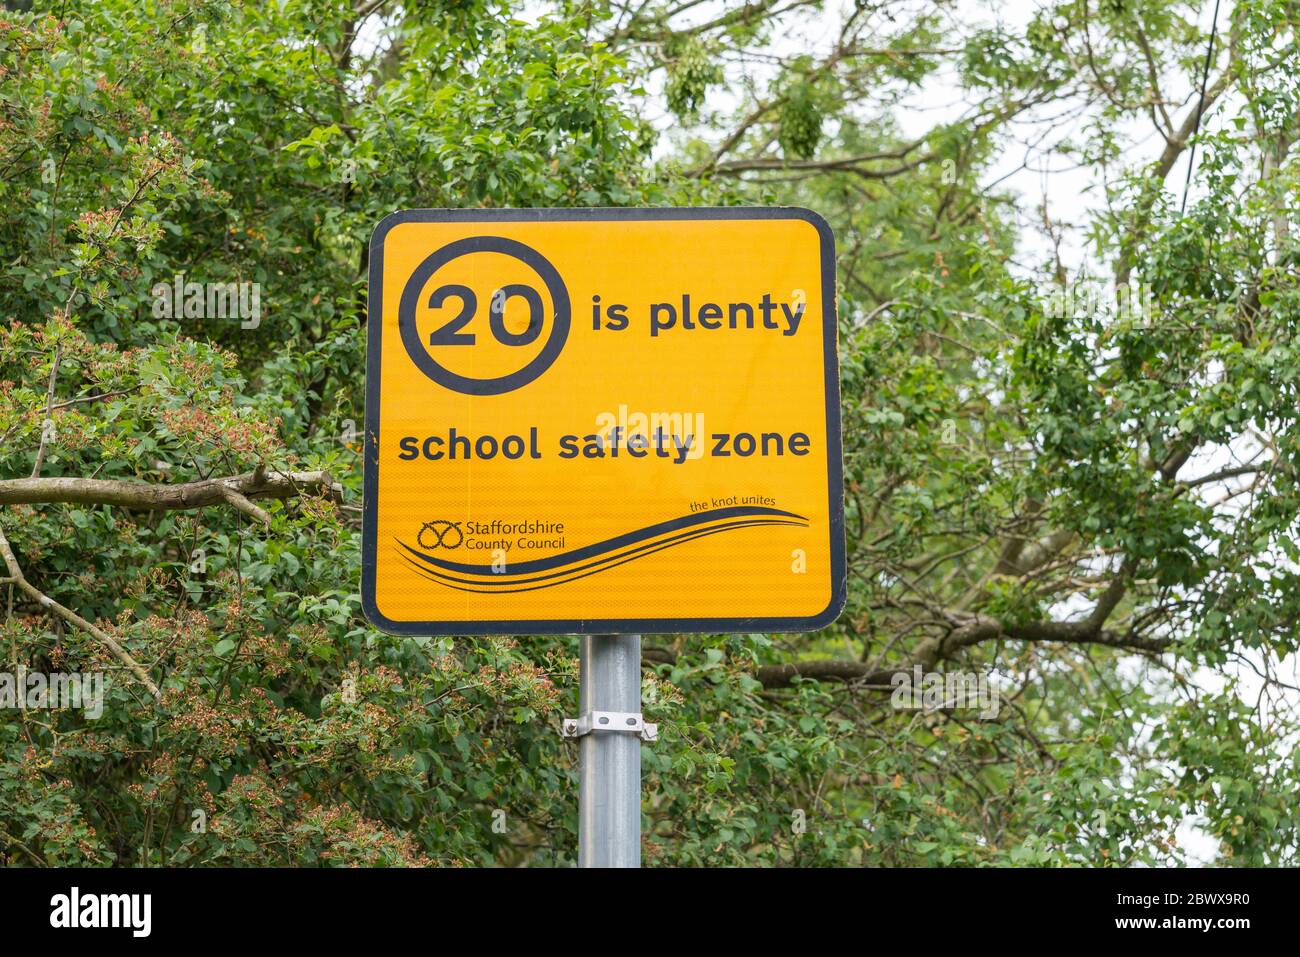 Panneau jaune vif indiquant « 20 is Plenty » zone de sécurité scolaire dans le village de Fradley, dans le Staffordshire, près de Lichfield Banque D'Images